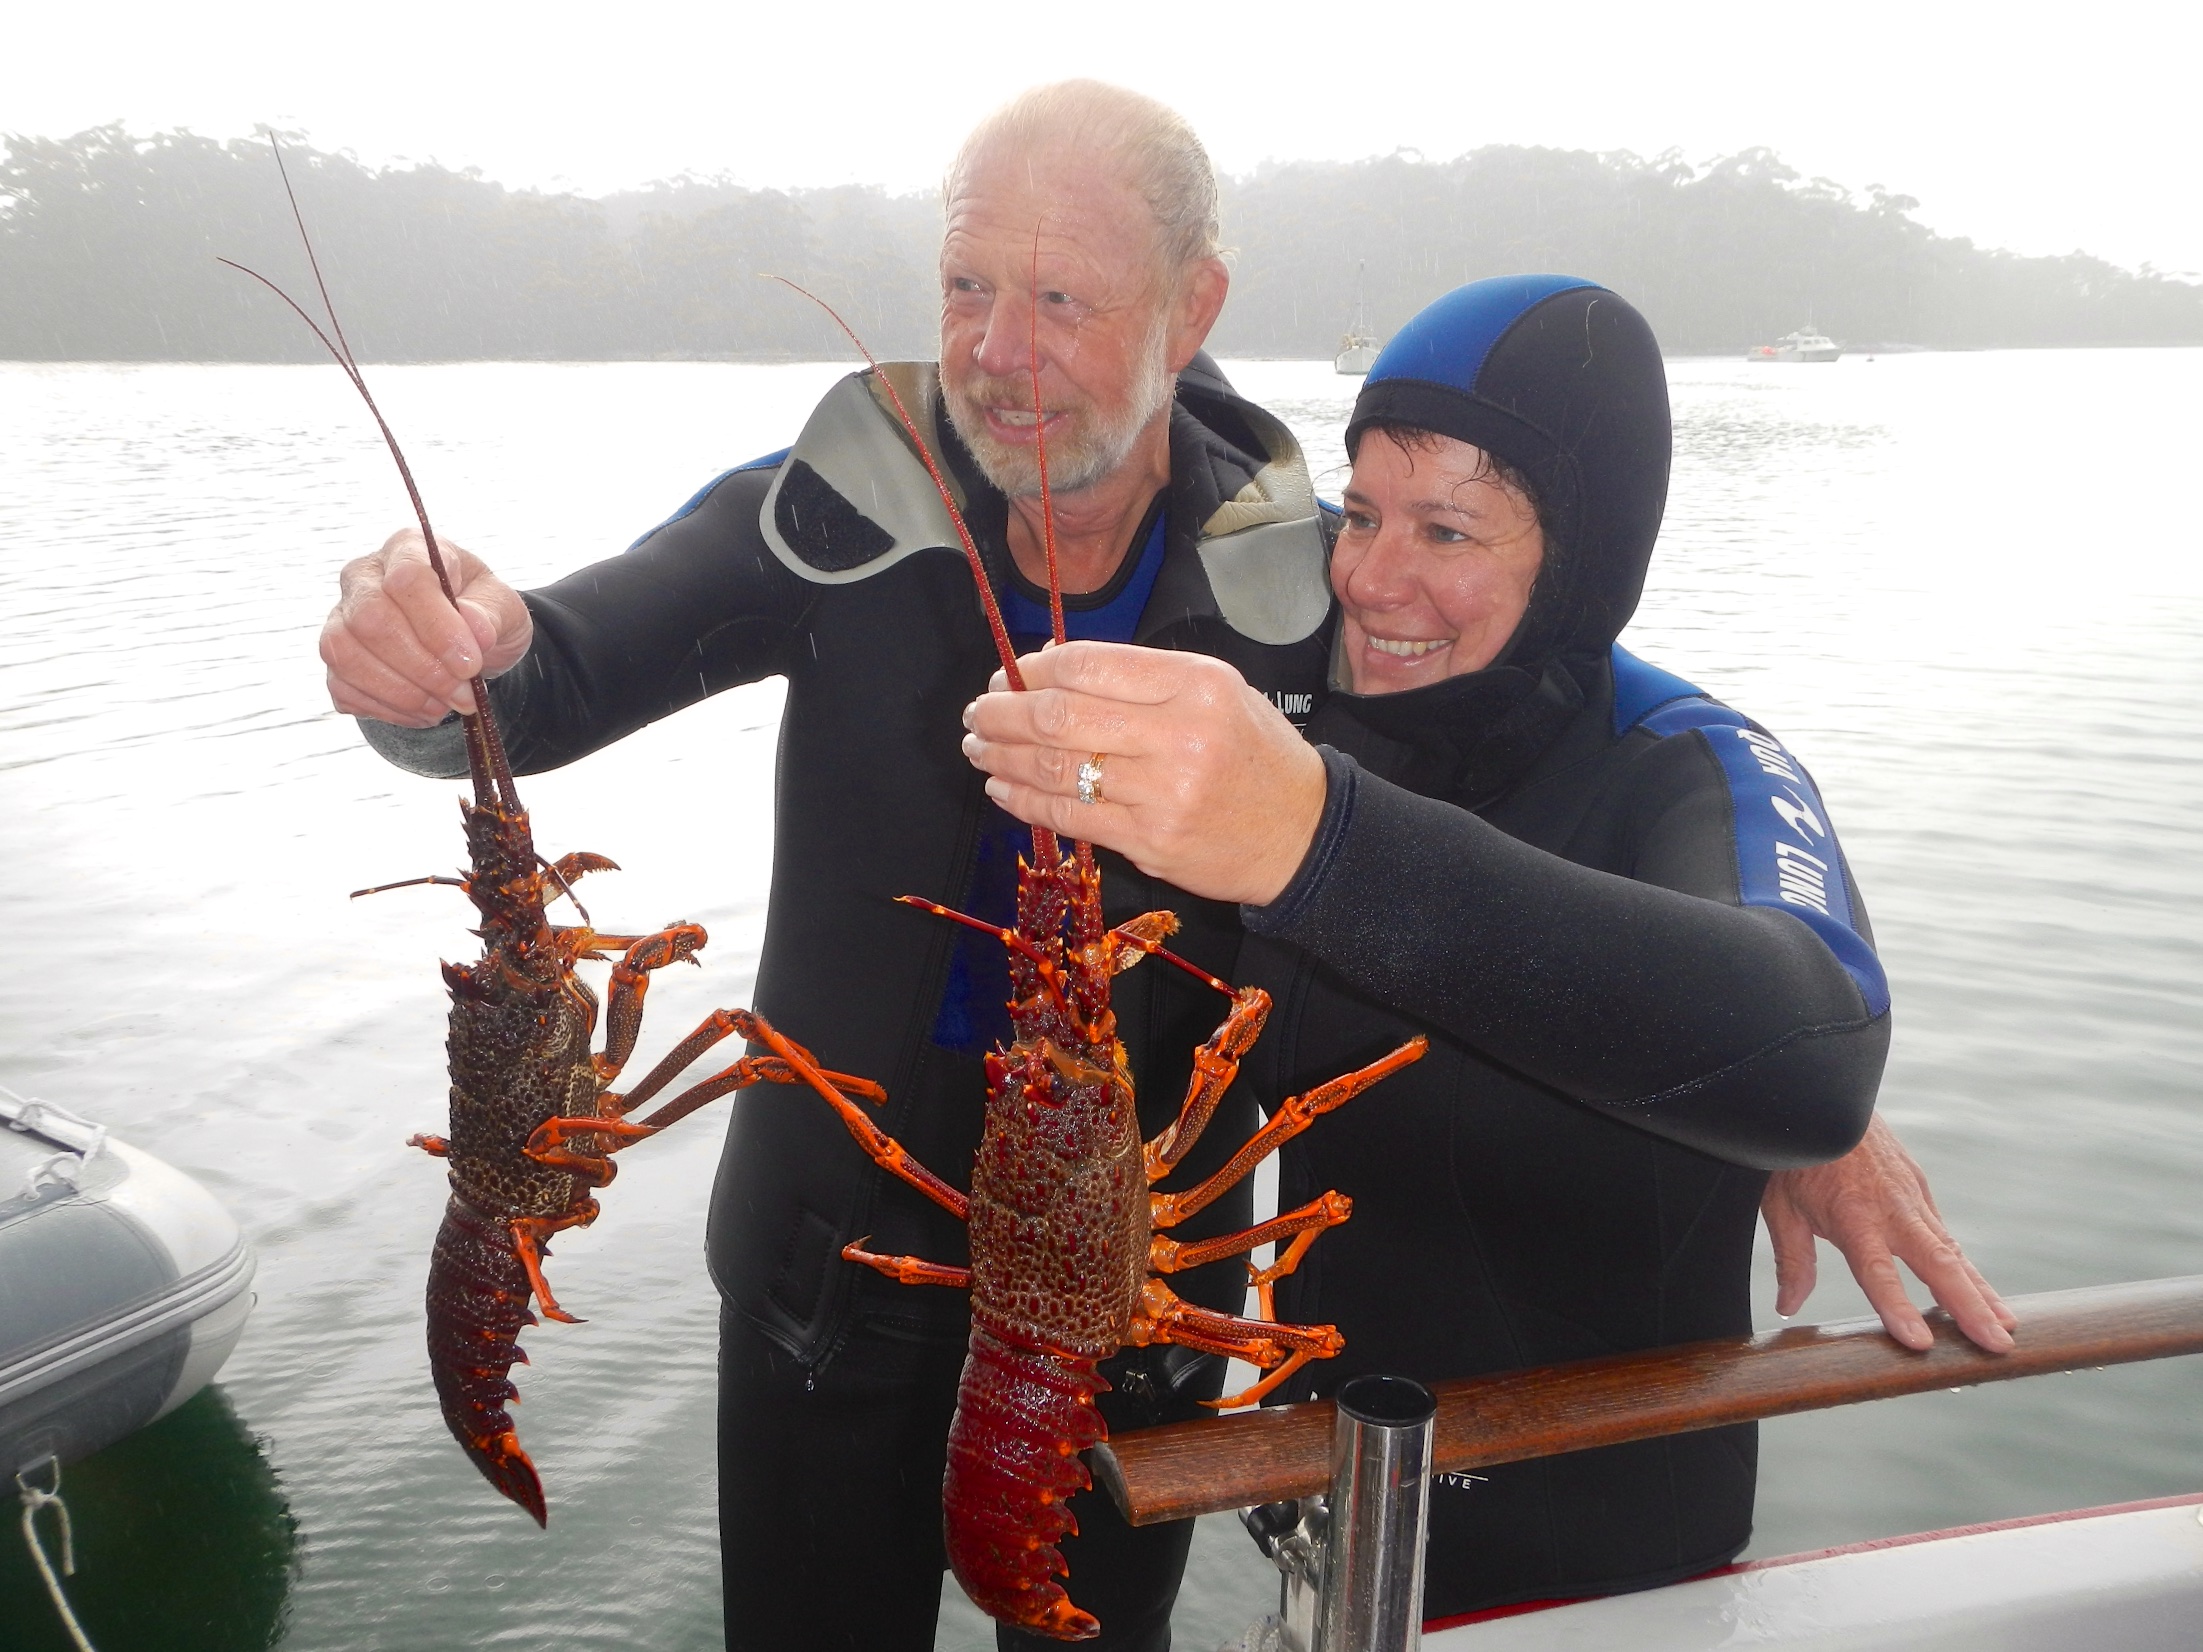  Annette &amp; Jak with their catch, Recherche Bay 